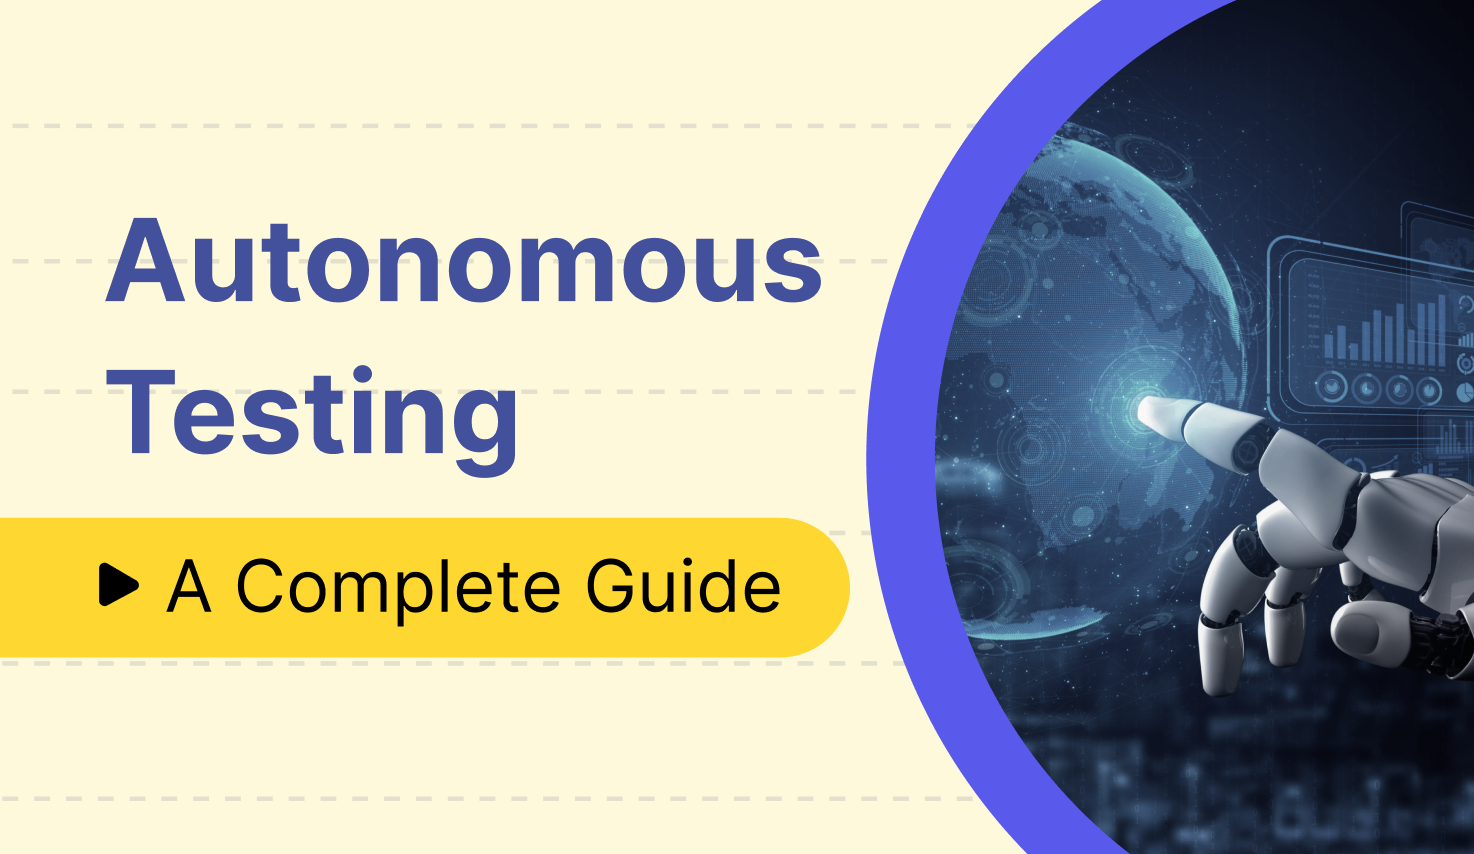 Autonomous testing: Complete Guide by Katalon